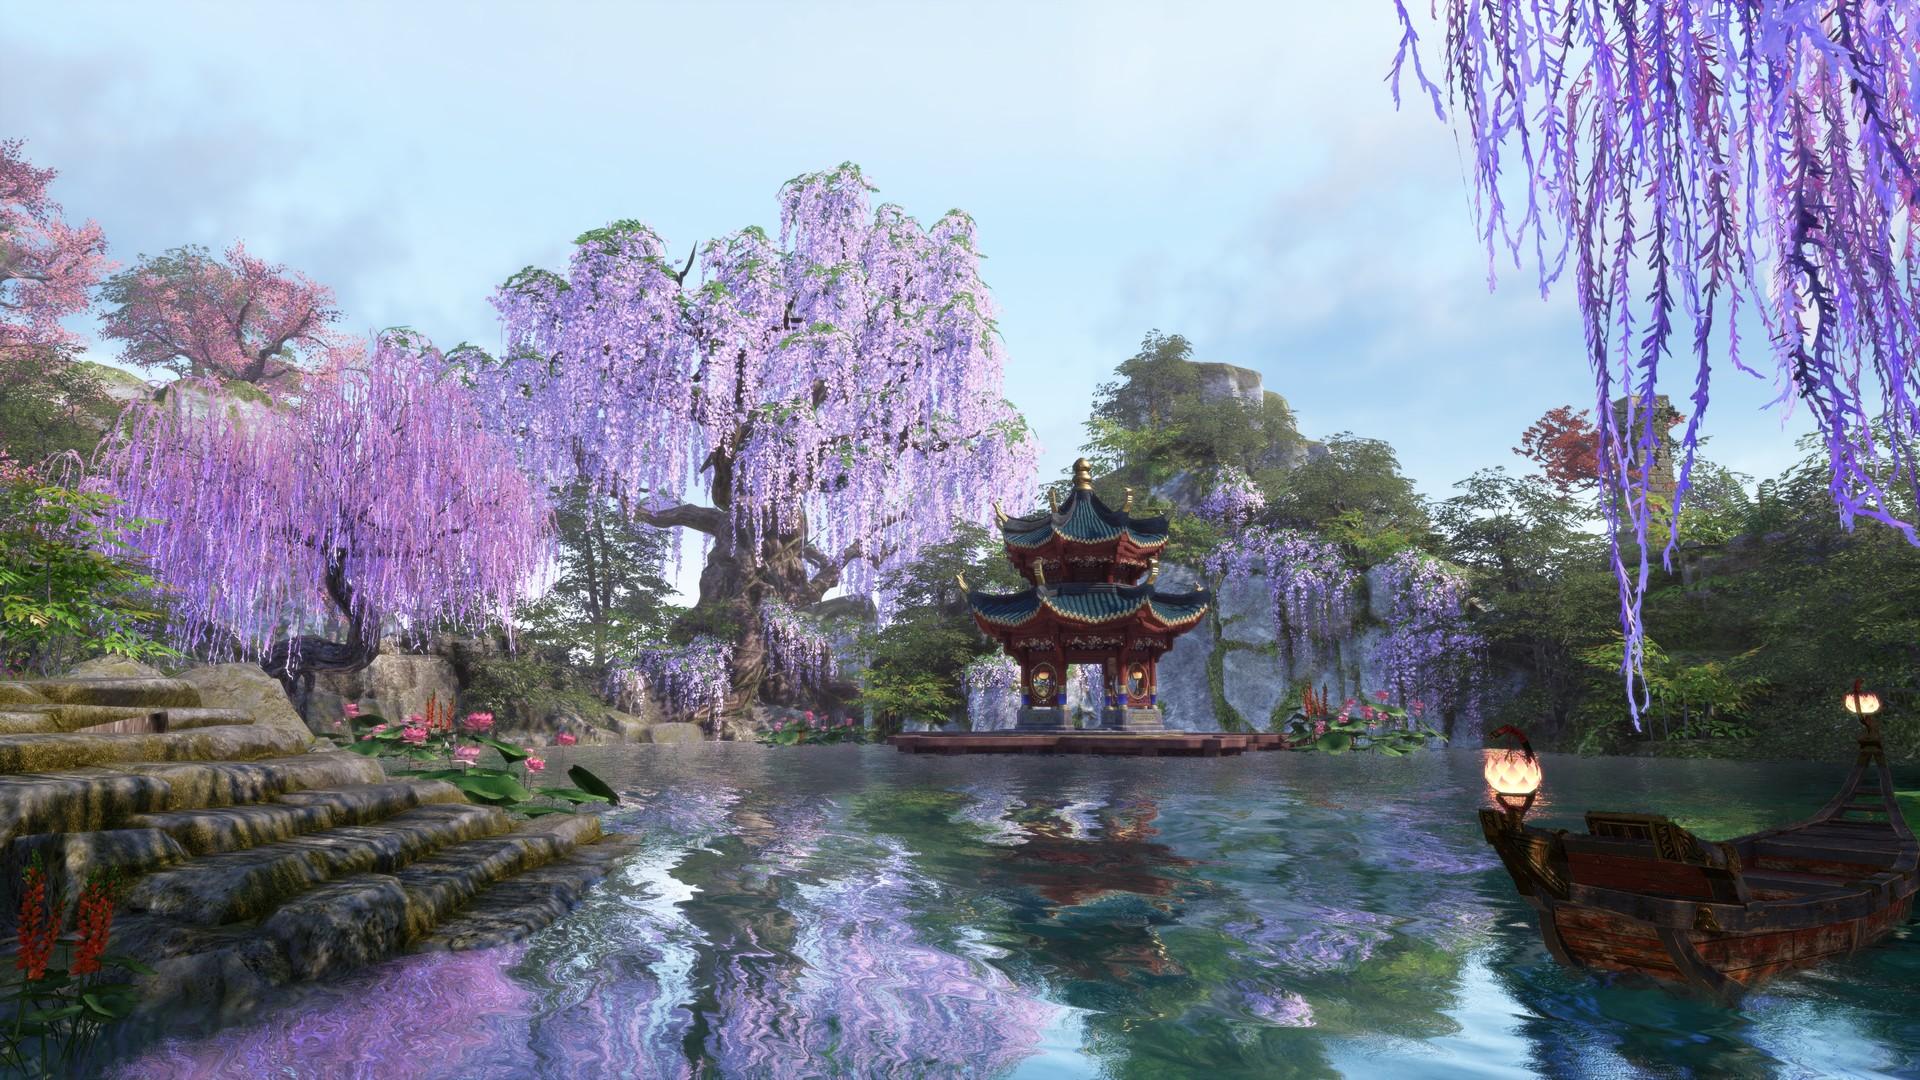 Screenshot №8 from game Swords of Legends Online